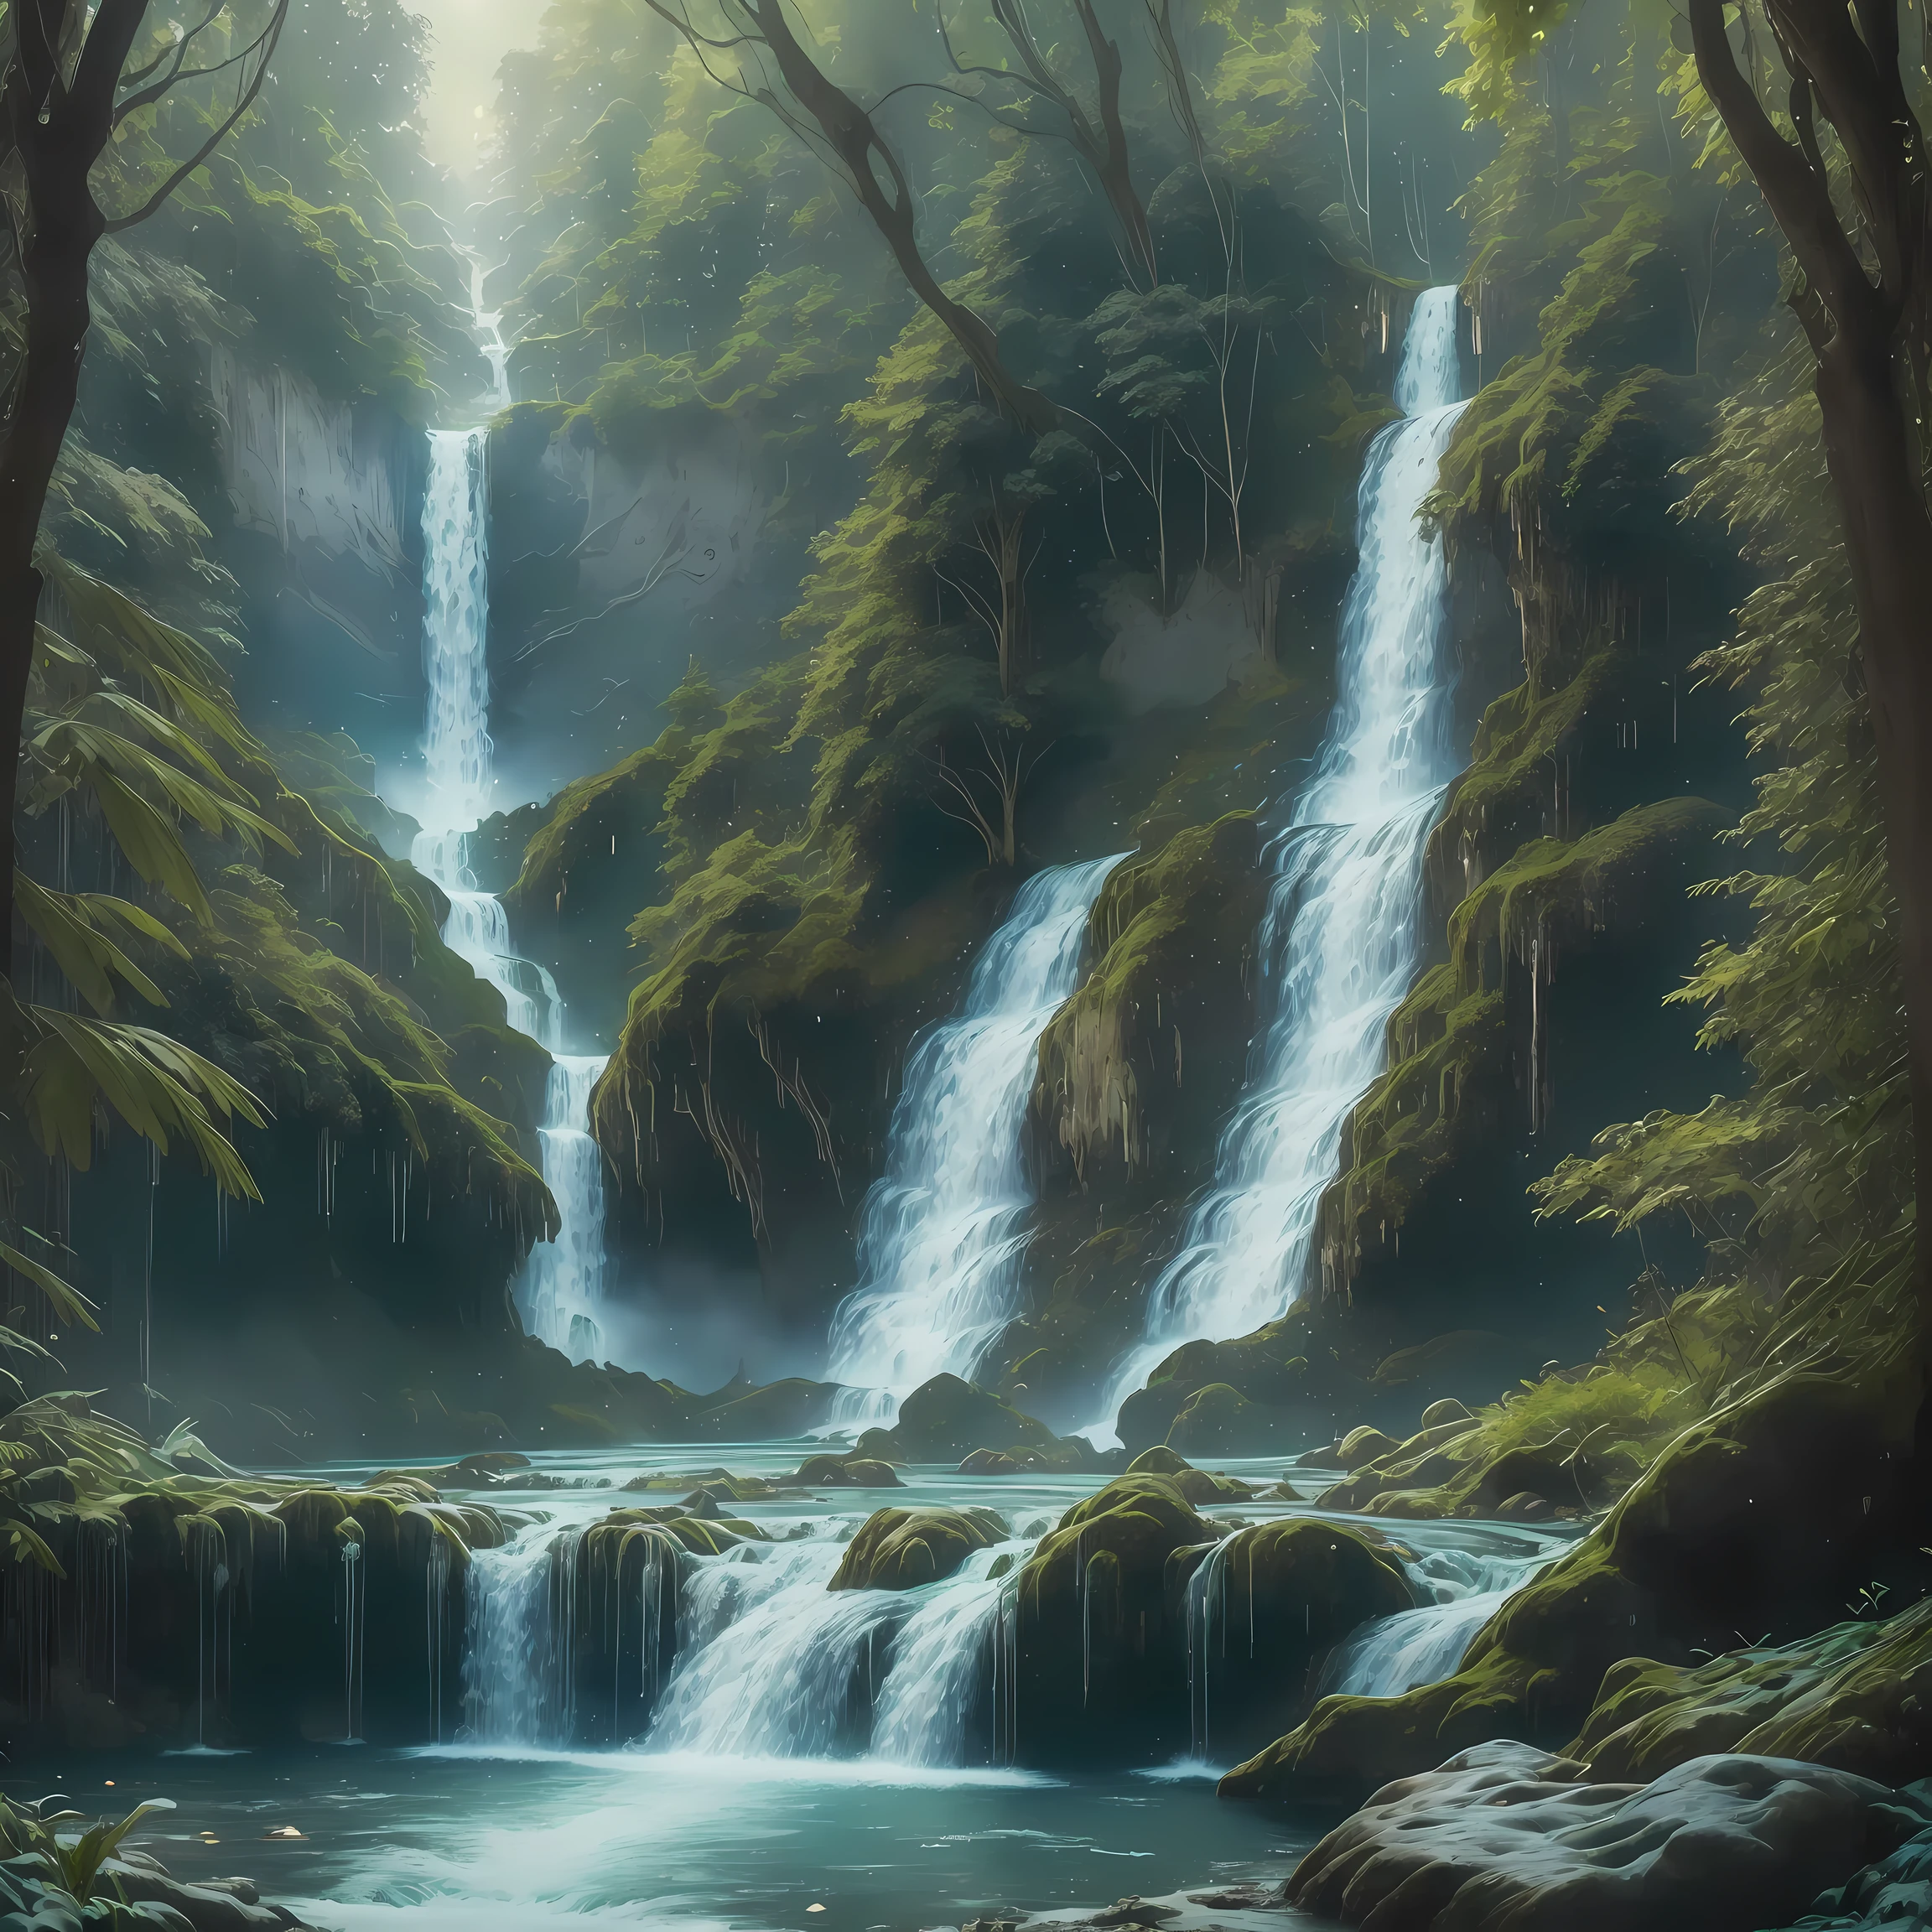 杰作, 32K, 团结 8k 壁纸, 极其详细, 超现实, 气泡, 杰作, 最好的质量,  精灵森林、梦幻森林、迷雾森林、(((充满魔力的神圣瀑布:1.5), 大瀑布、浓密的瀑布、类似尼亚加拉大瀑布的精灵森林瀑布、奇妙的氛围、  , (杰作,最好的质量:1.5), Liam Wong 的风格, 克里斯特科, 克林贡人, 刺绣, 餐桌,晴朗的天空,牙买加,地中海